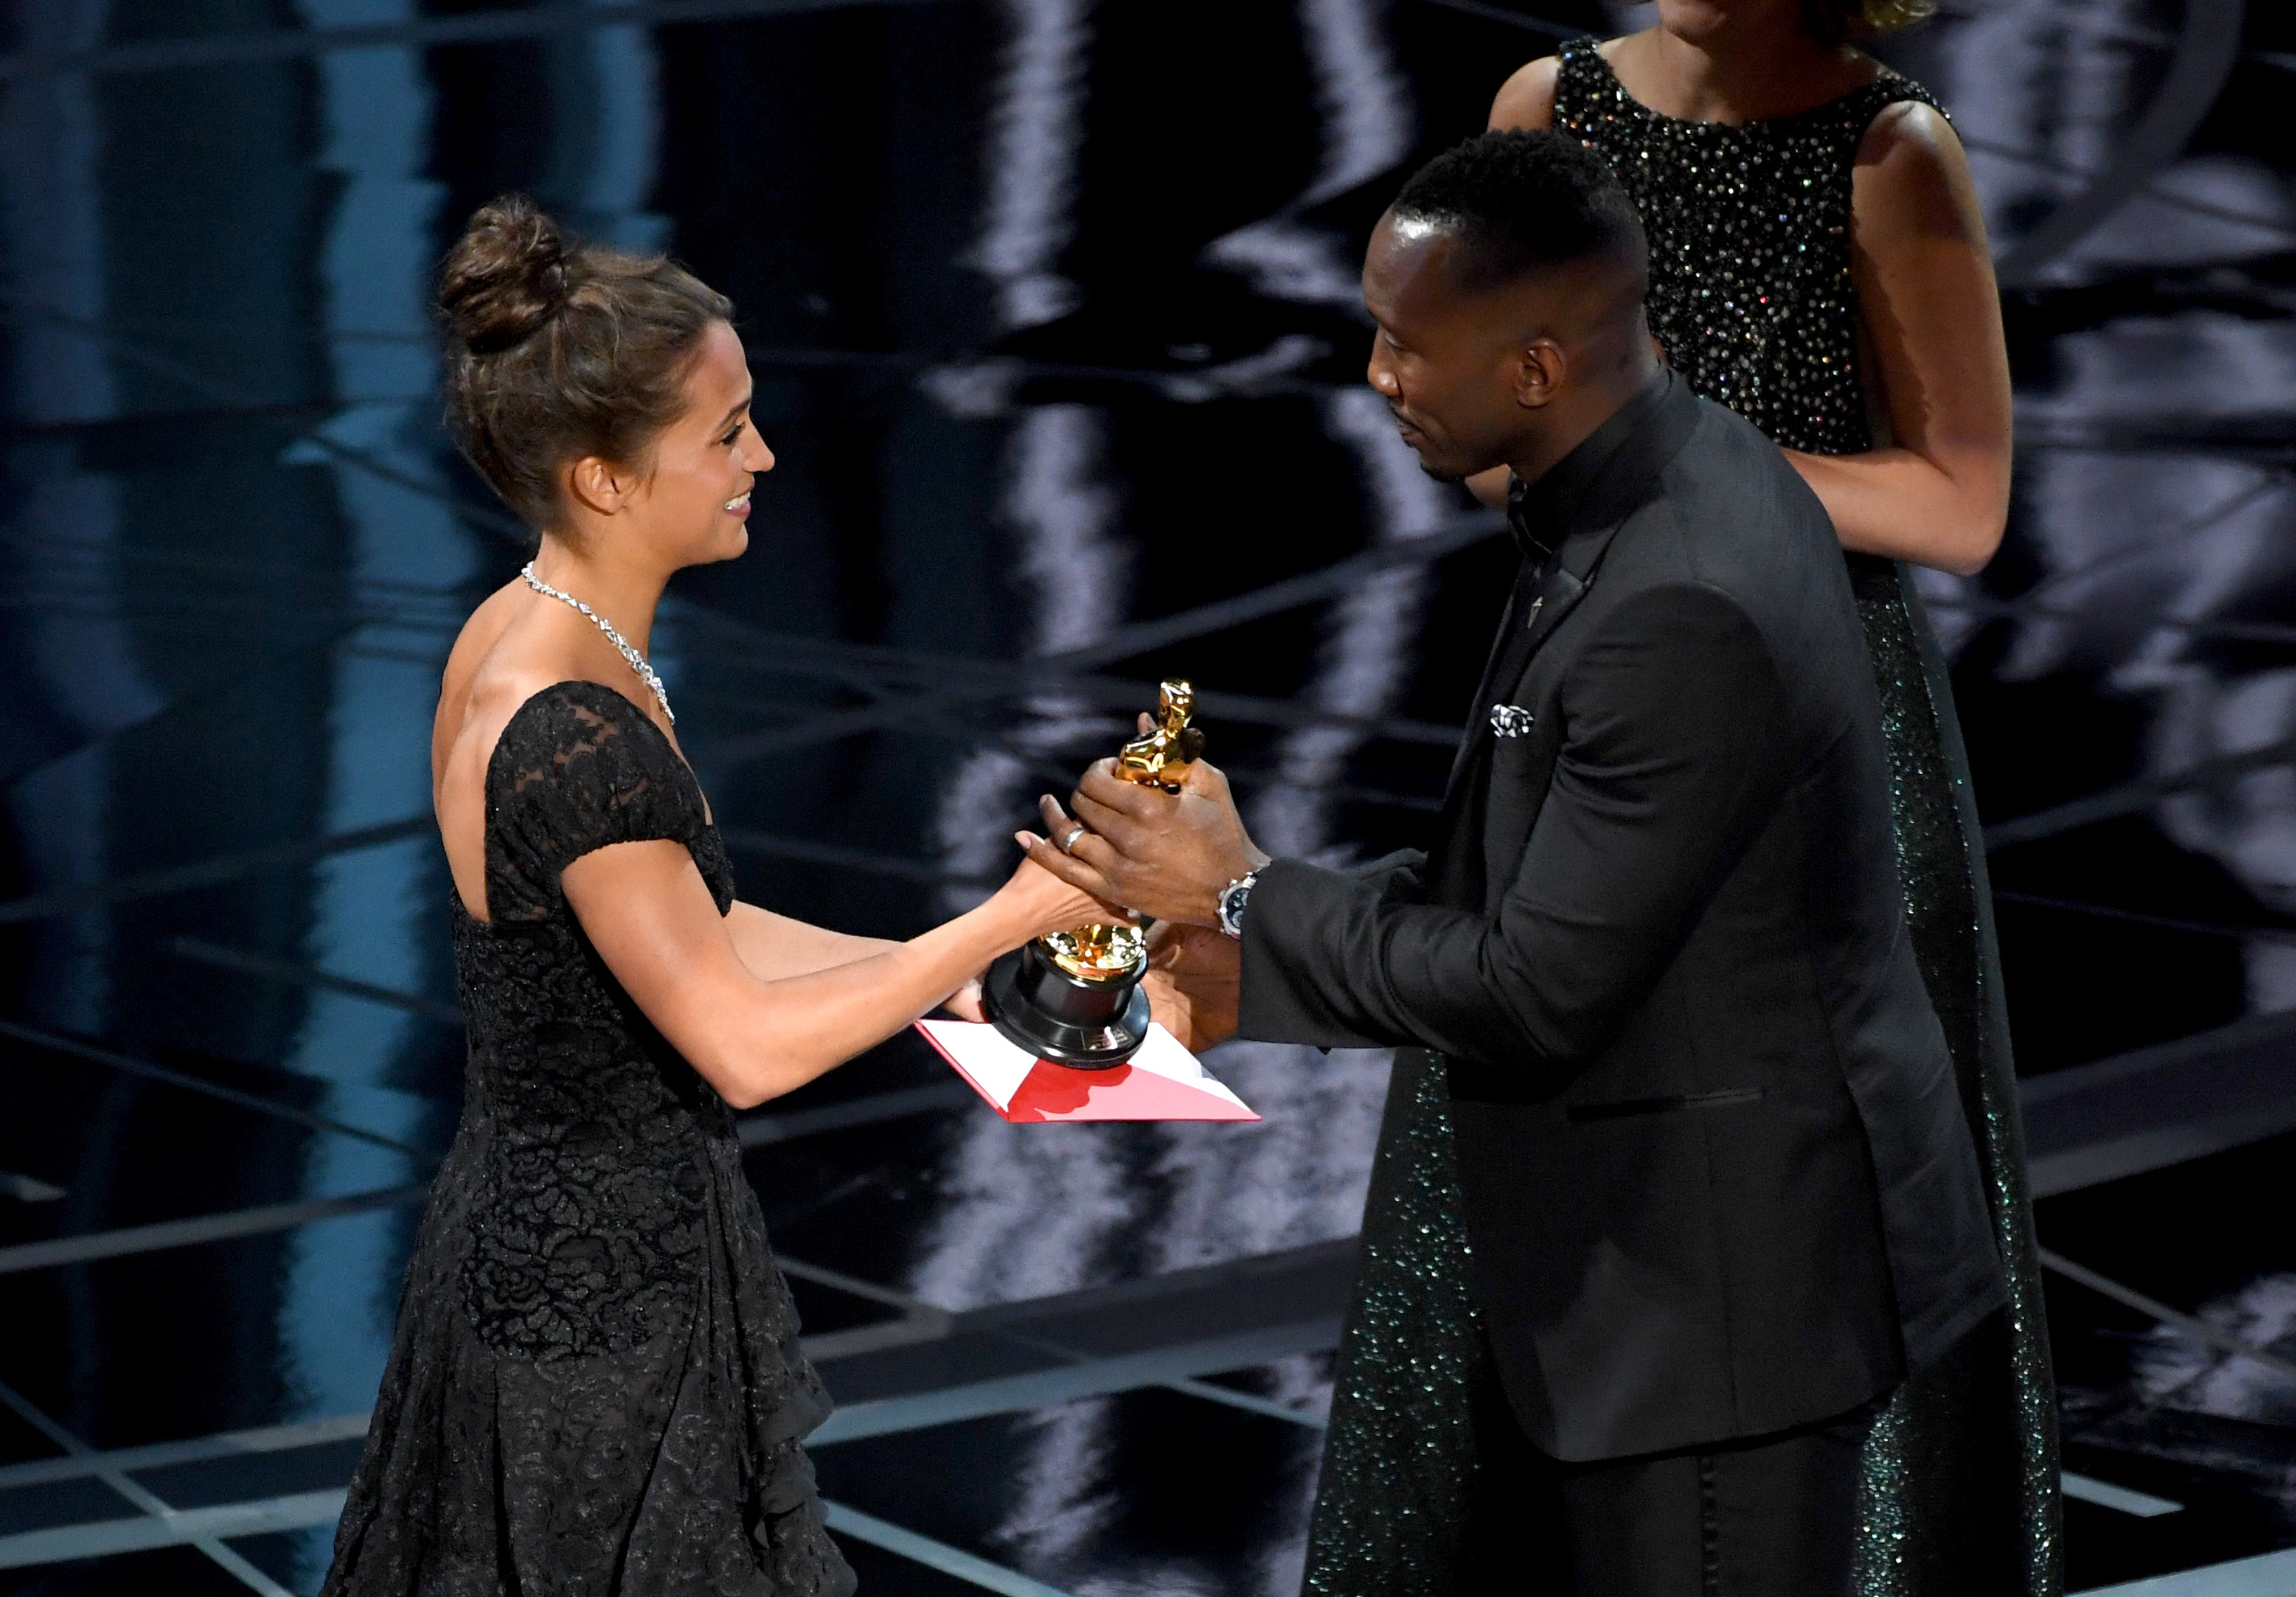 Махершала Али получил награду из рук Алисии Викандер —лауреатки "Оскара" за лучшую женскую роль второго плана 